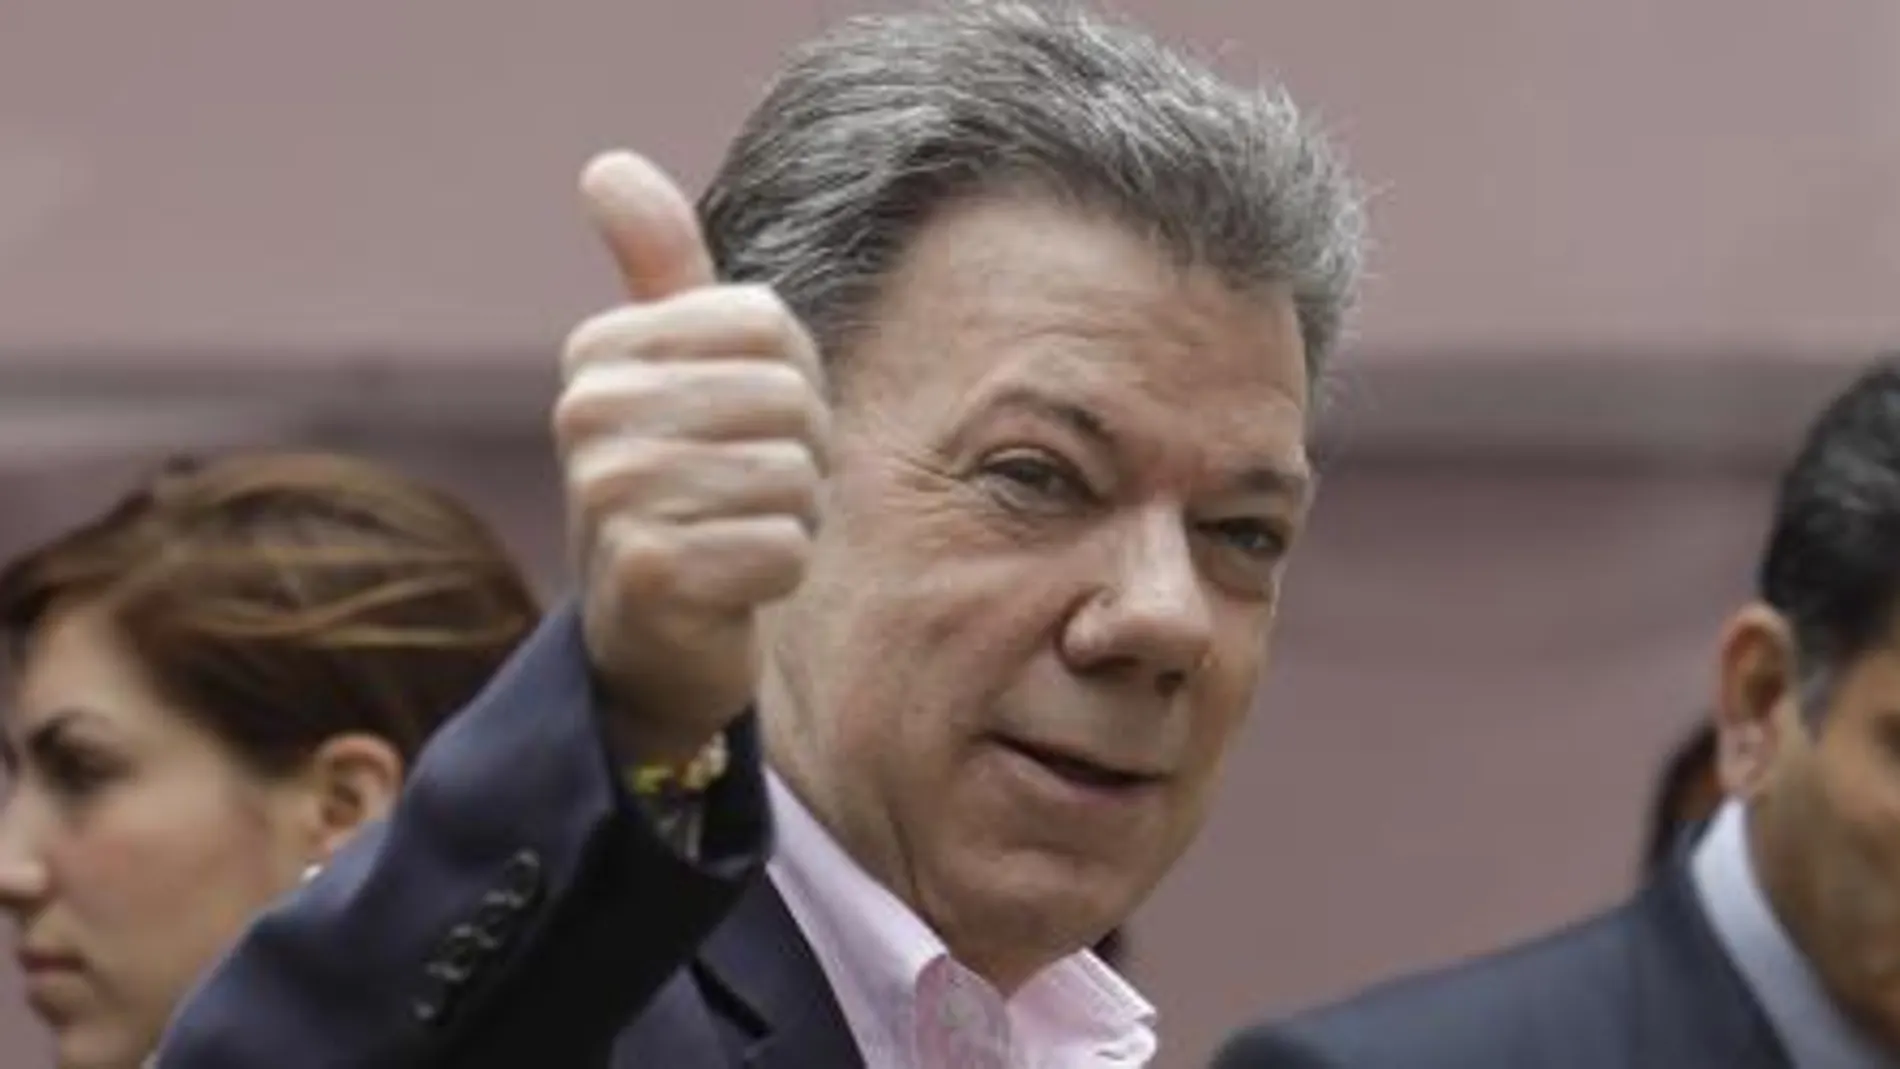 Juan Manuel Santos tras depositar su voto hoy en Colombia.